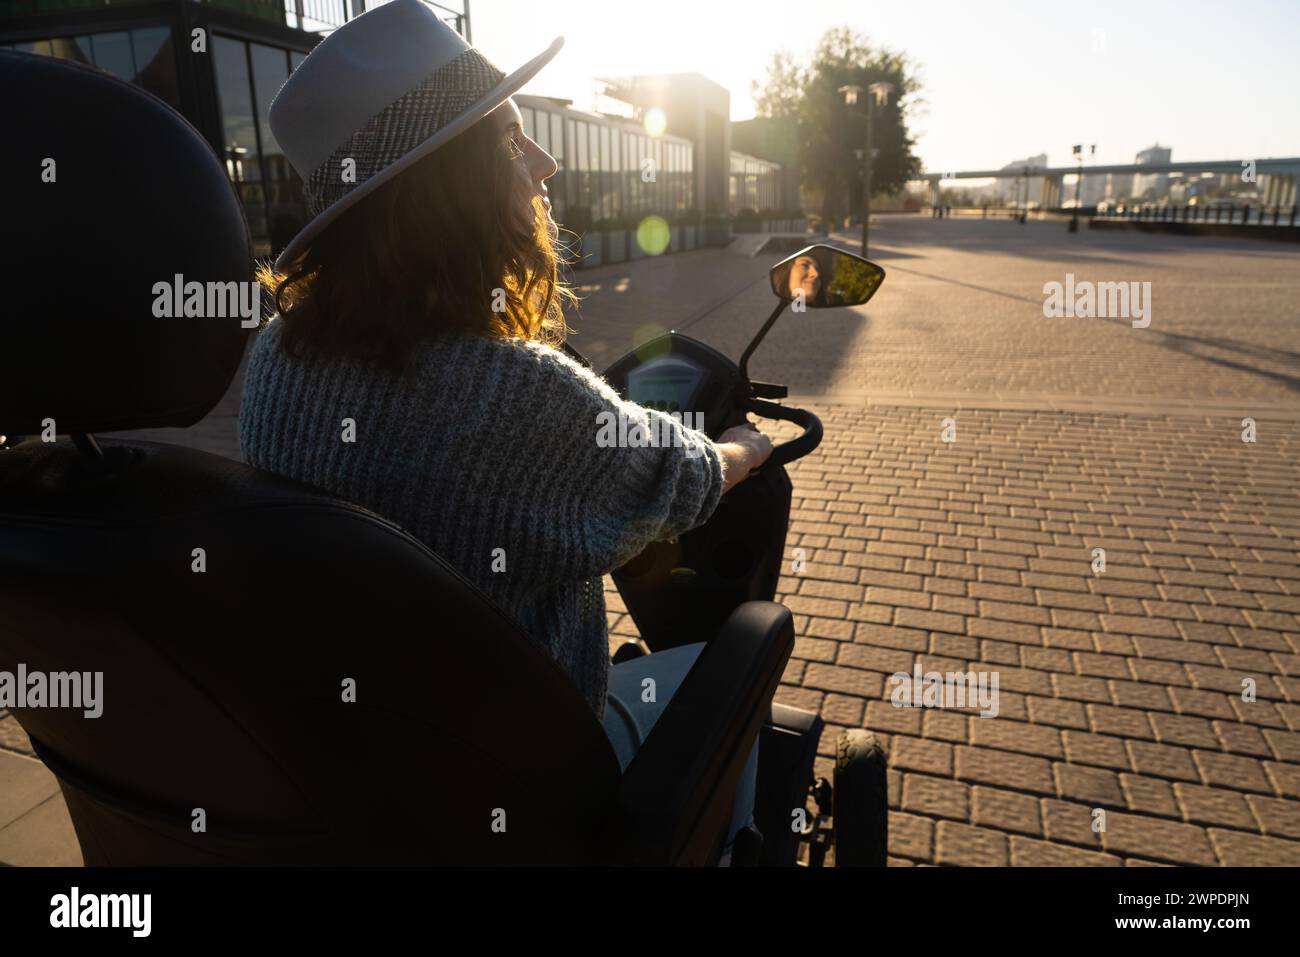 Frau Tourist auf einem Elektroroller mit vier Rädern auf einer Stadtstraße. Das Gesicht der Frau ist im Rückspiegel sichtbar. Stockfoto